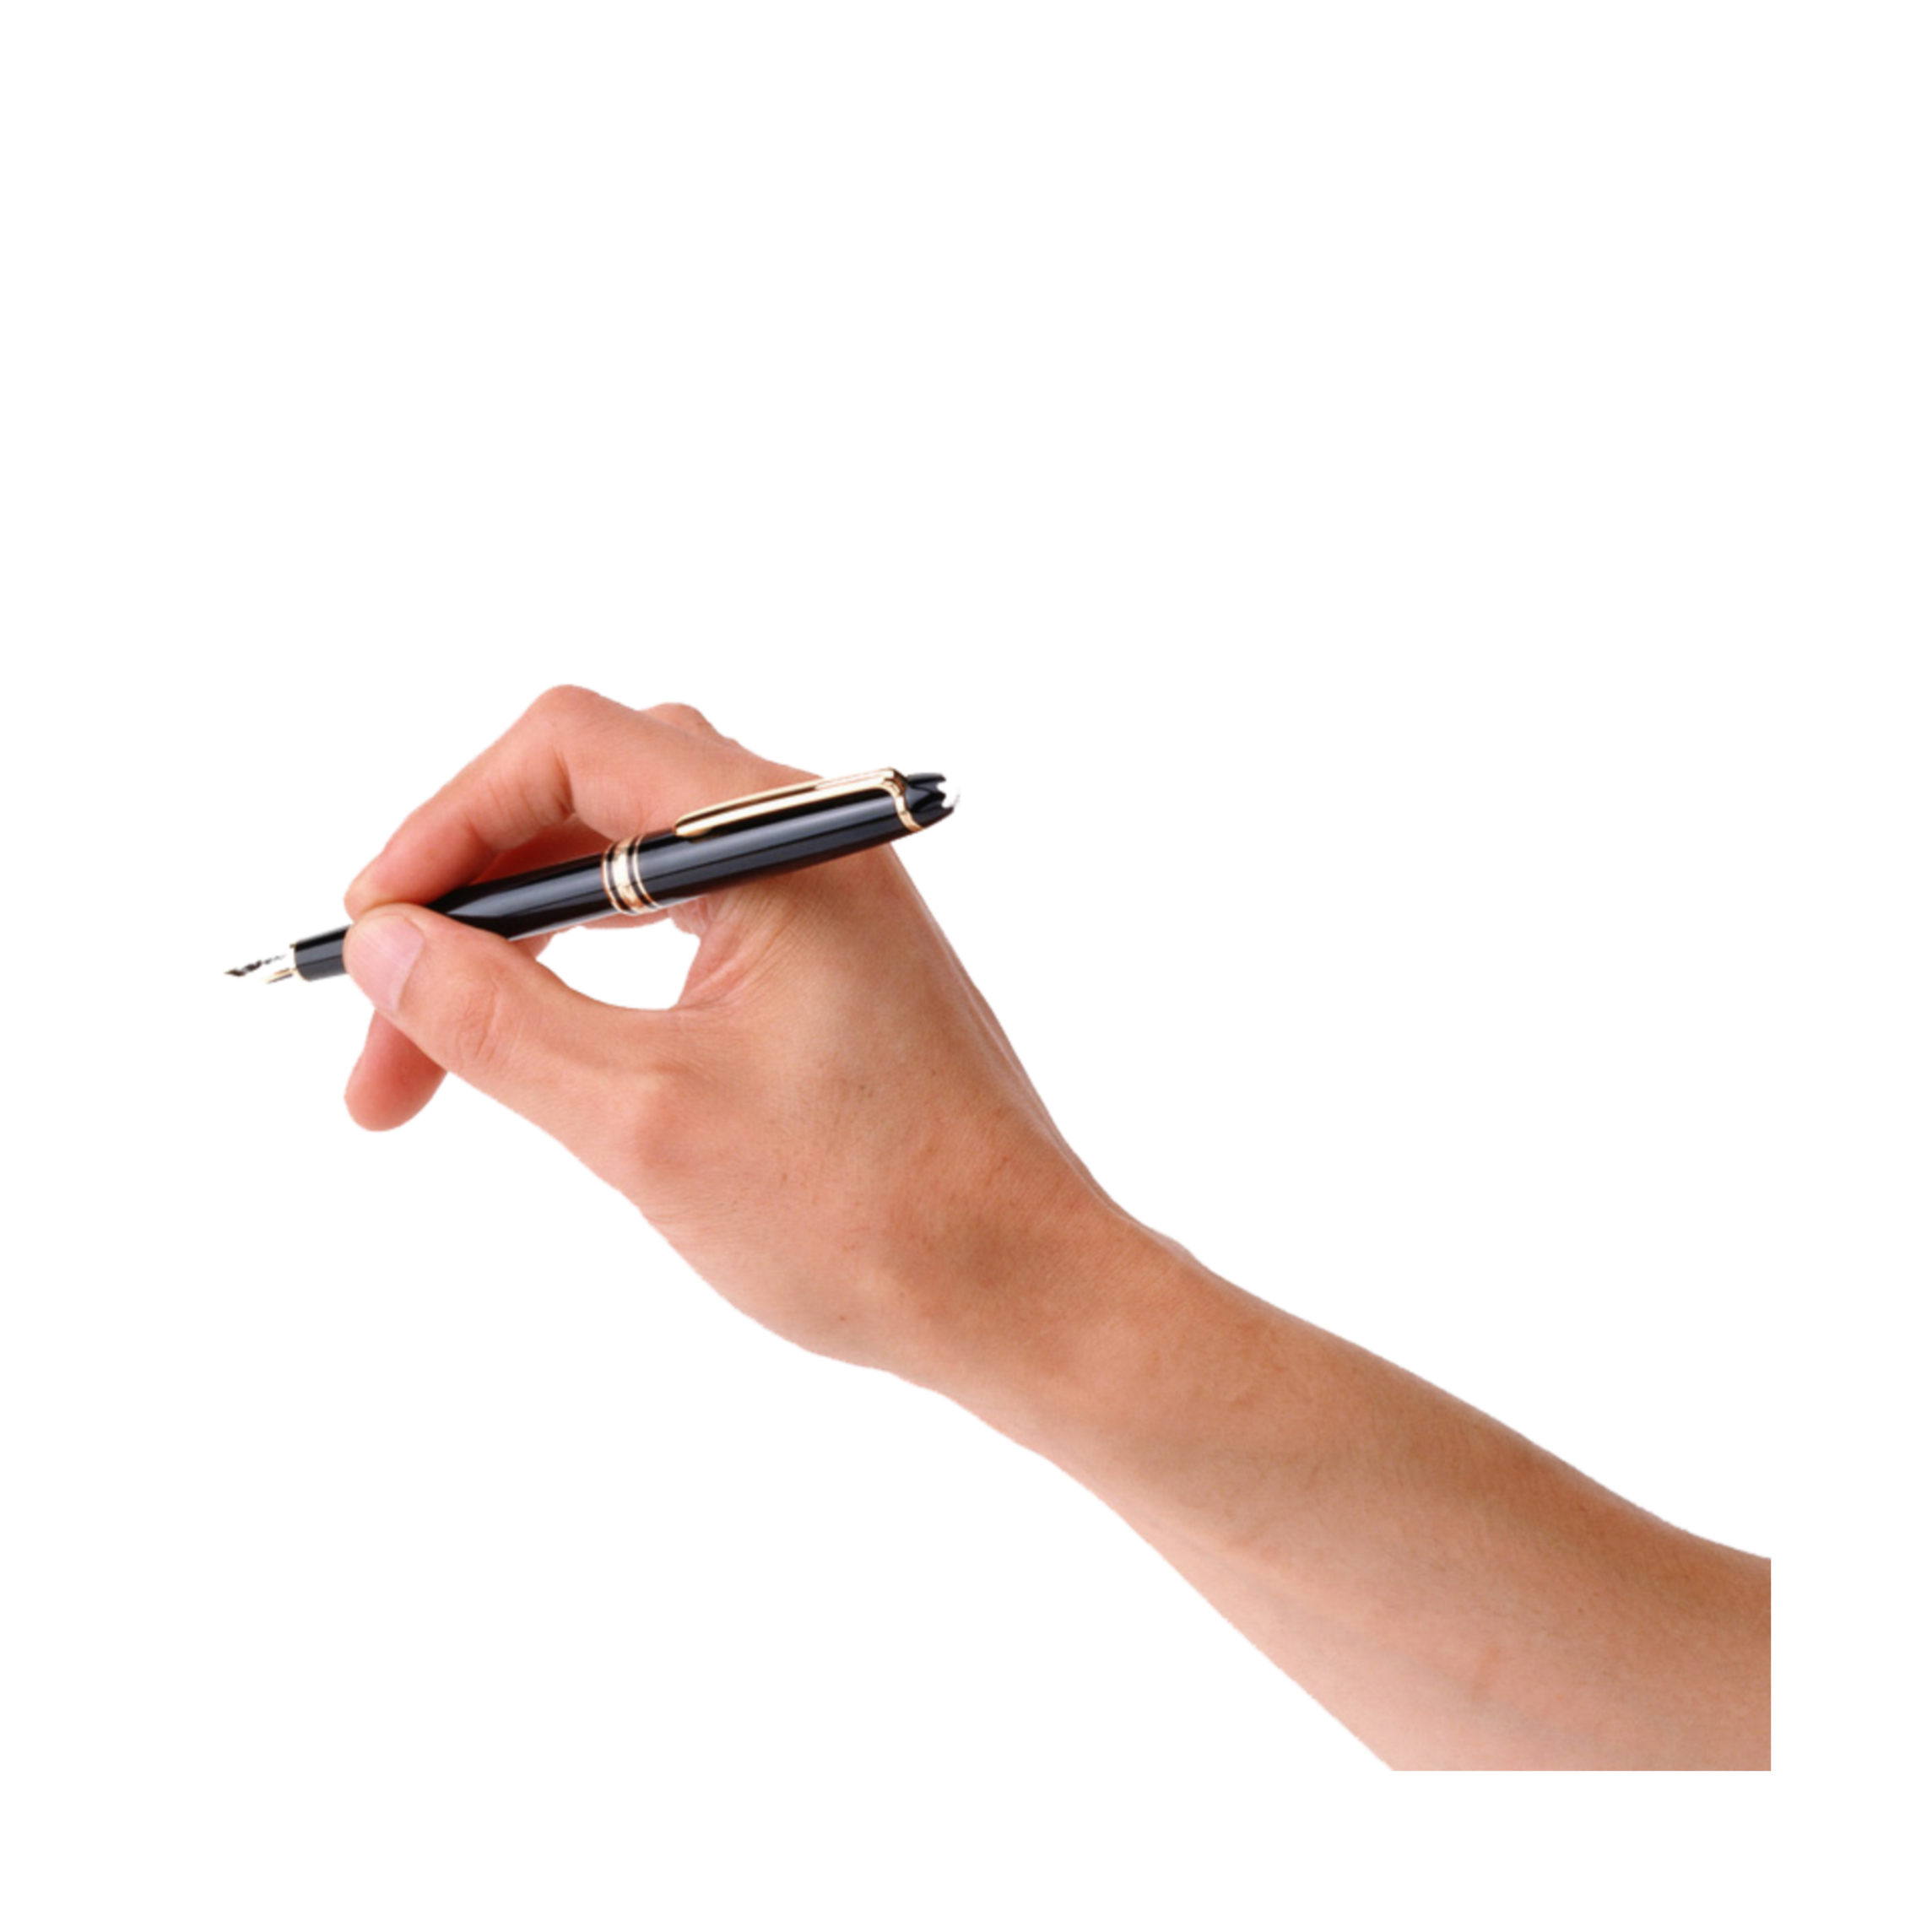 Можно взять ручку. Рука с ручкой. Рука с ручкой без фона. Пишущая рука. Женская рука с ручкой.